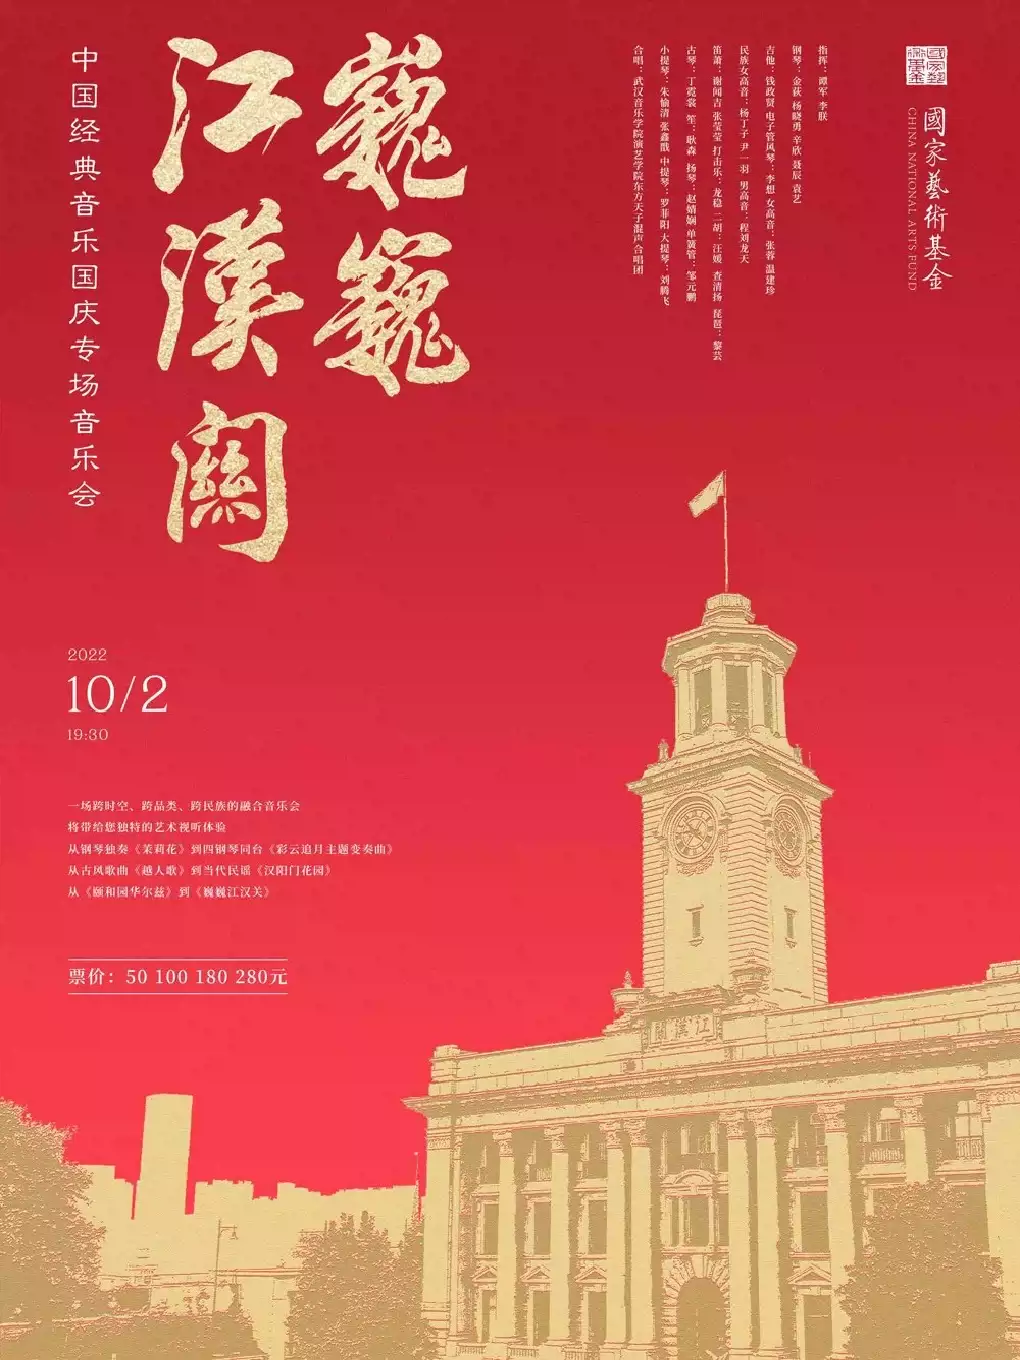 中国经典音乐国庆专场武汉音乐会